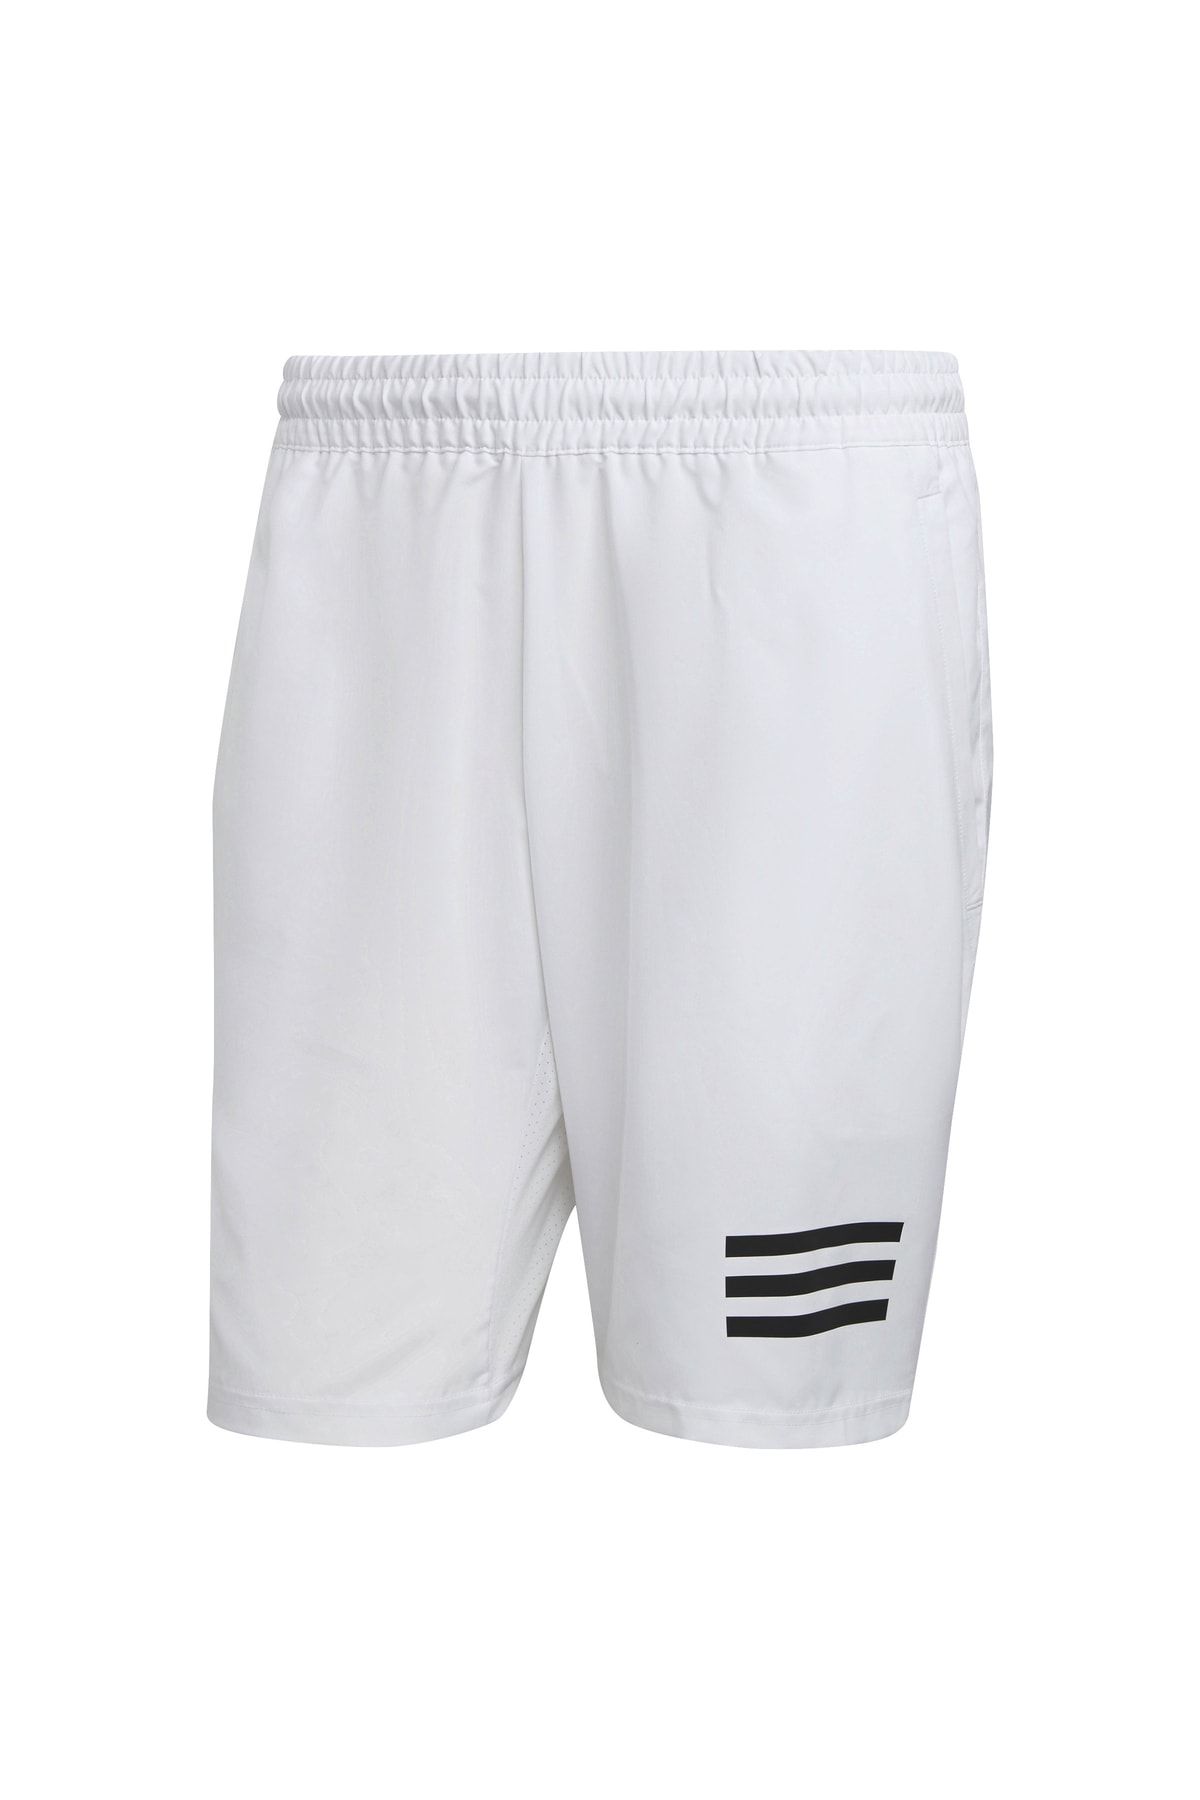 شلوارک ورزشی آدیداس مردانه مخصوص تنیس سفید Adidas